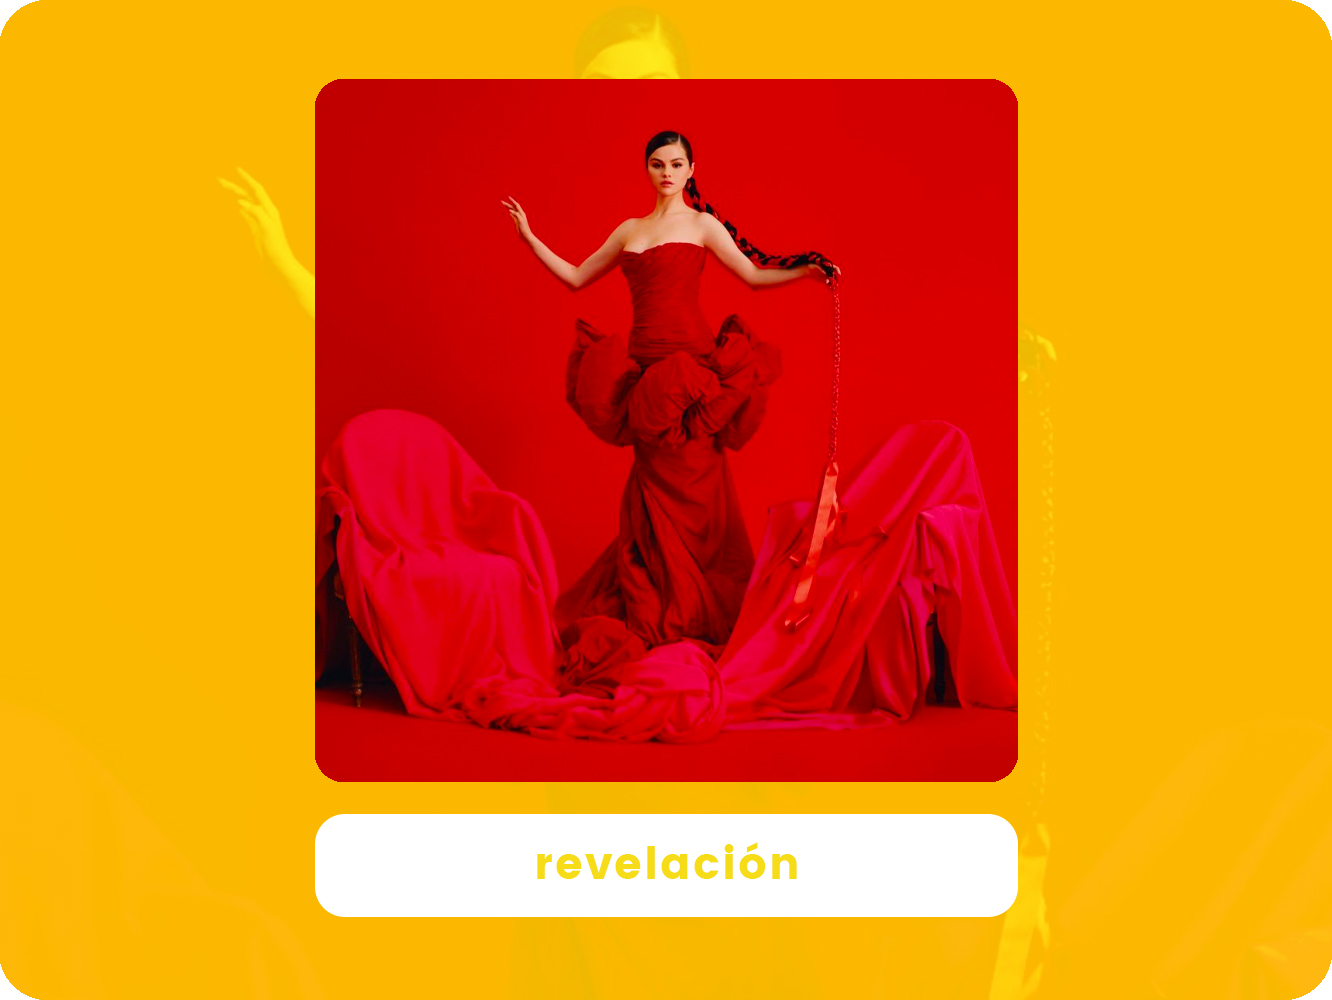  Poca ‘Revelación’ la de Selena Gomez en su salto al español